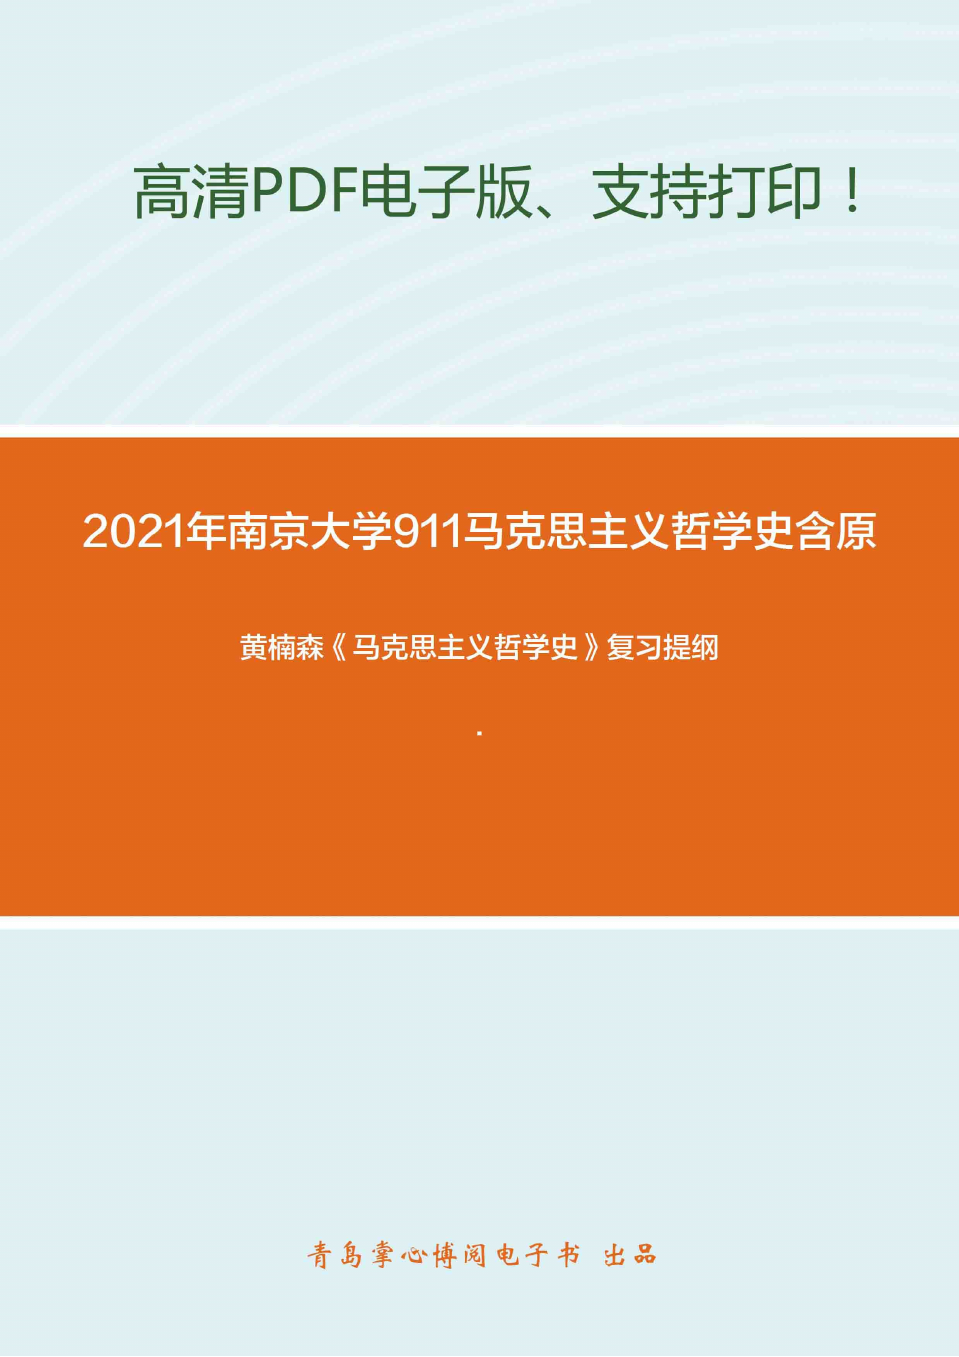 2021年南京大学911马克思主义哲学史(含原著)考研精品资料之黄楠森《马克思主义哲学史》复习提纲